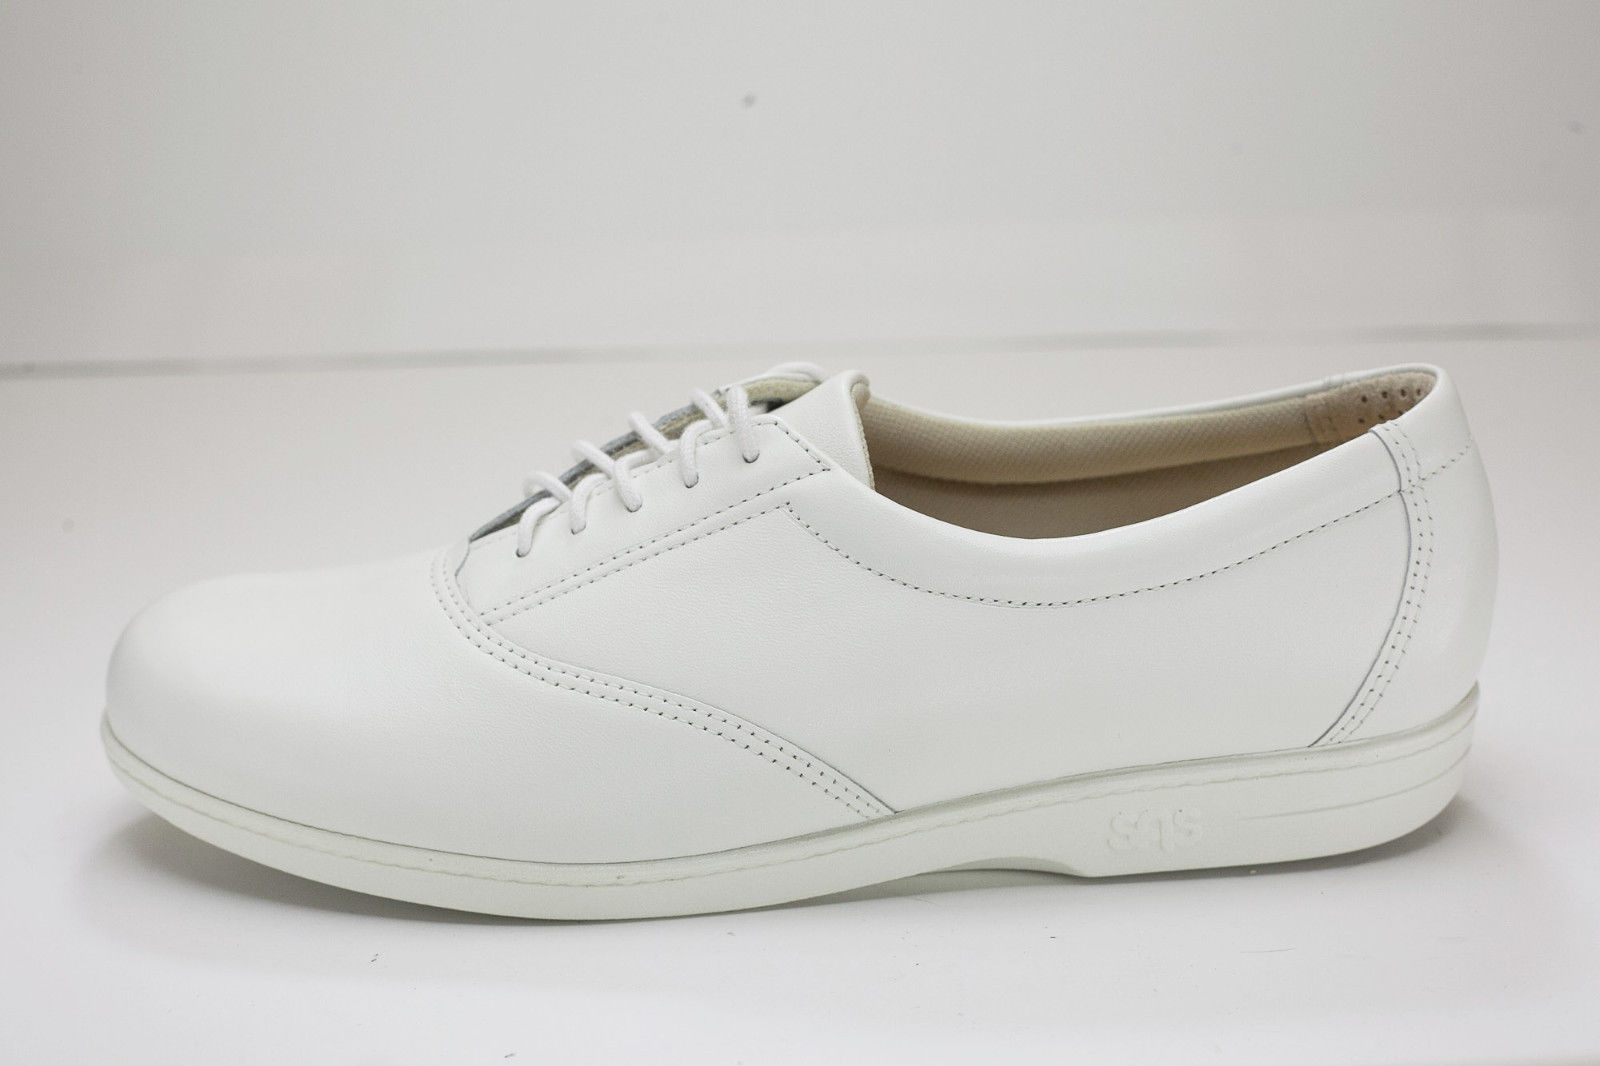 SAS 9.5 Narrow White Oxford Shoes Womens and similar items